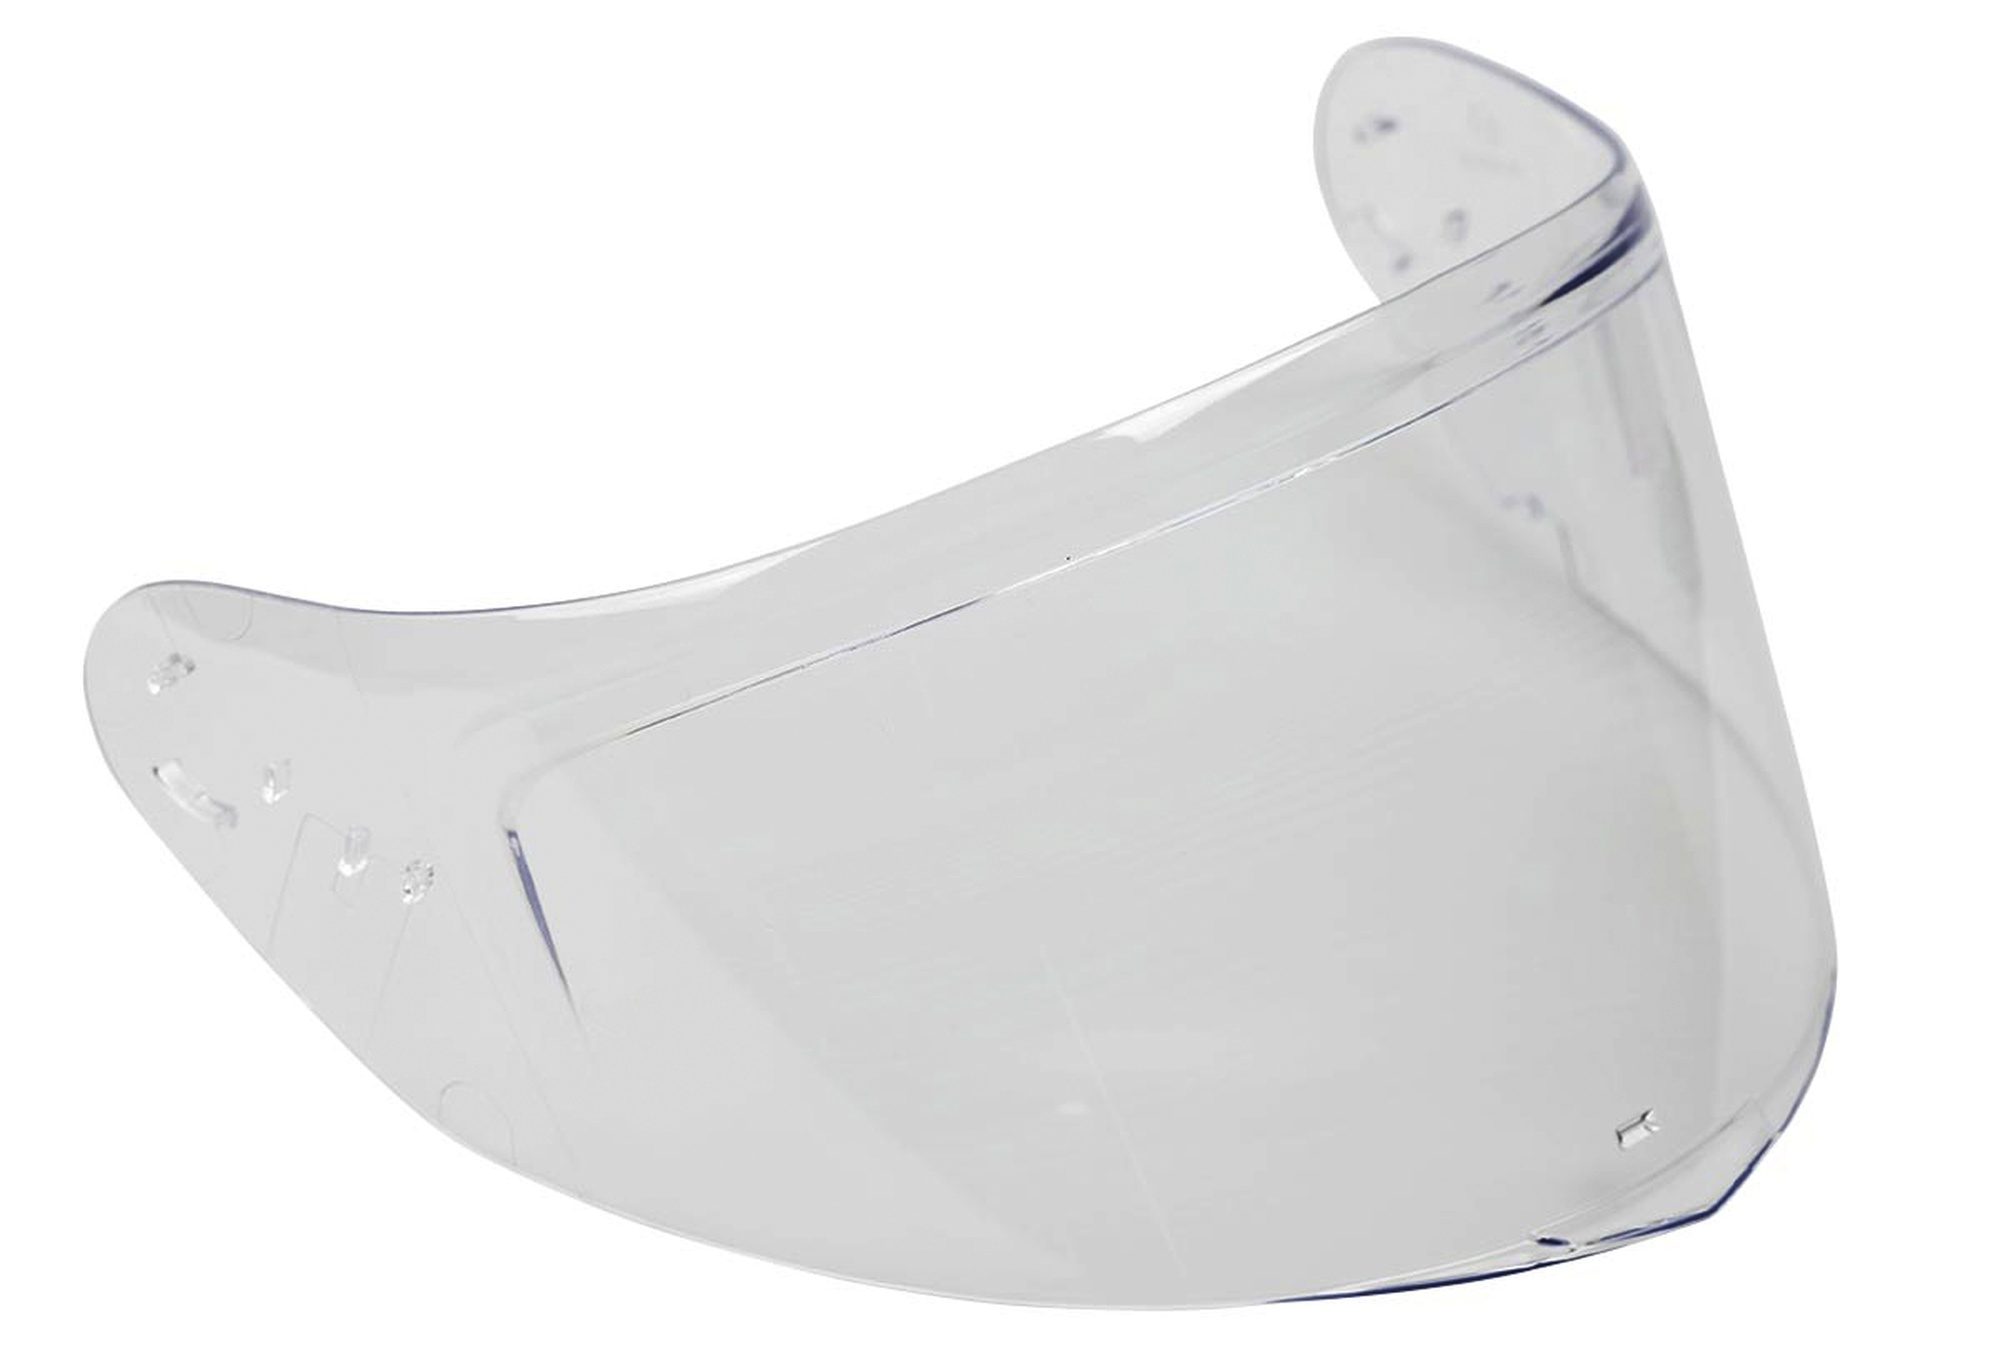 Obrázek produktu náhradní bradová ventilace pro přilby Sharki, VEMAR/V-HELMETS nemá